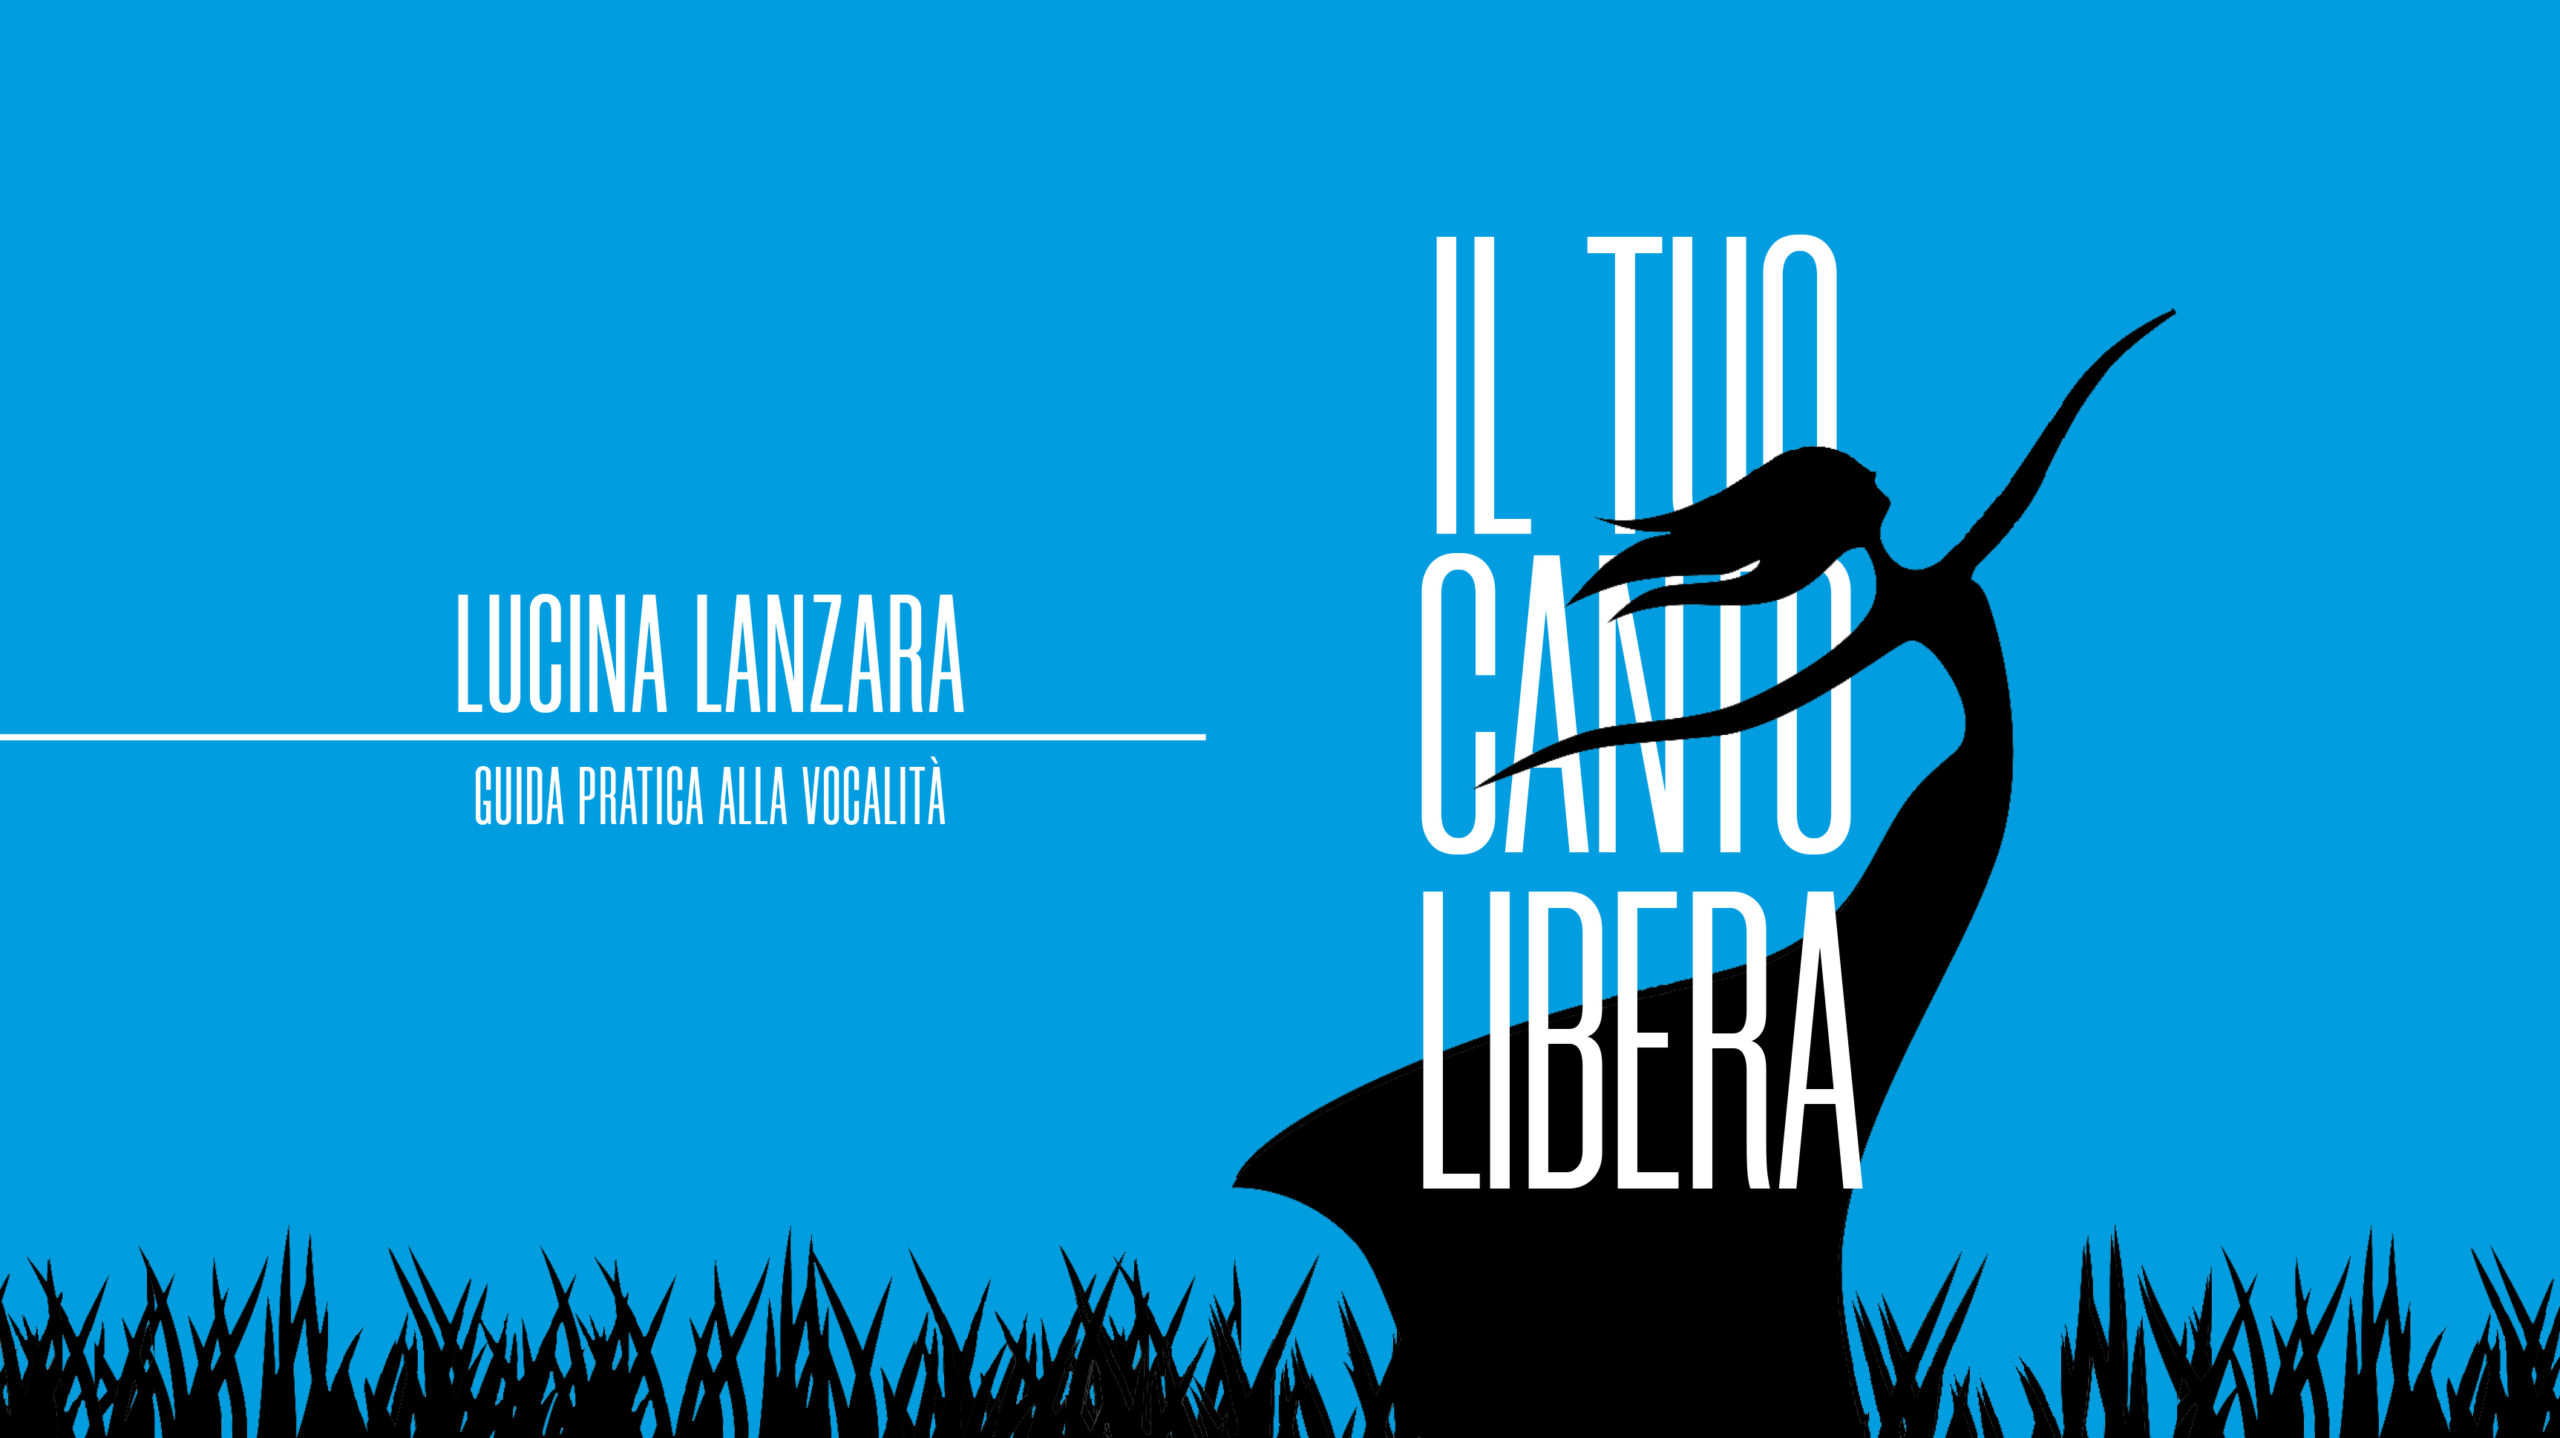 Canto ed emozioni a Scicli con Lucina Lanzara